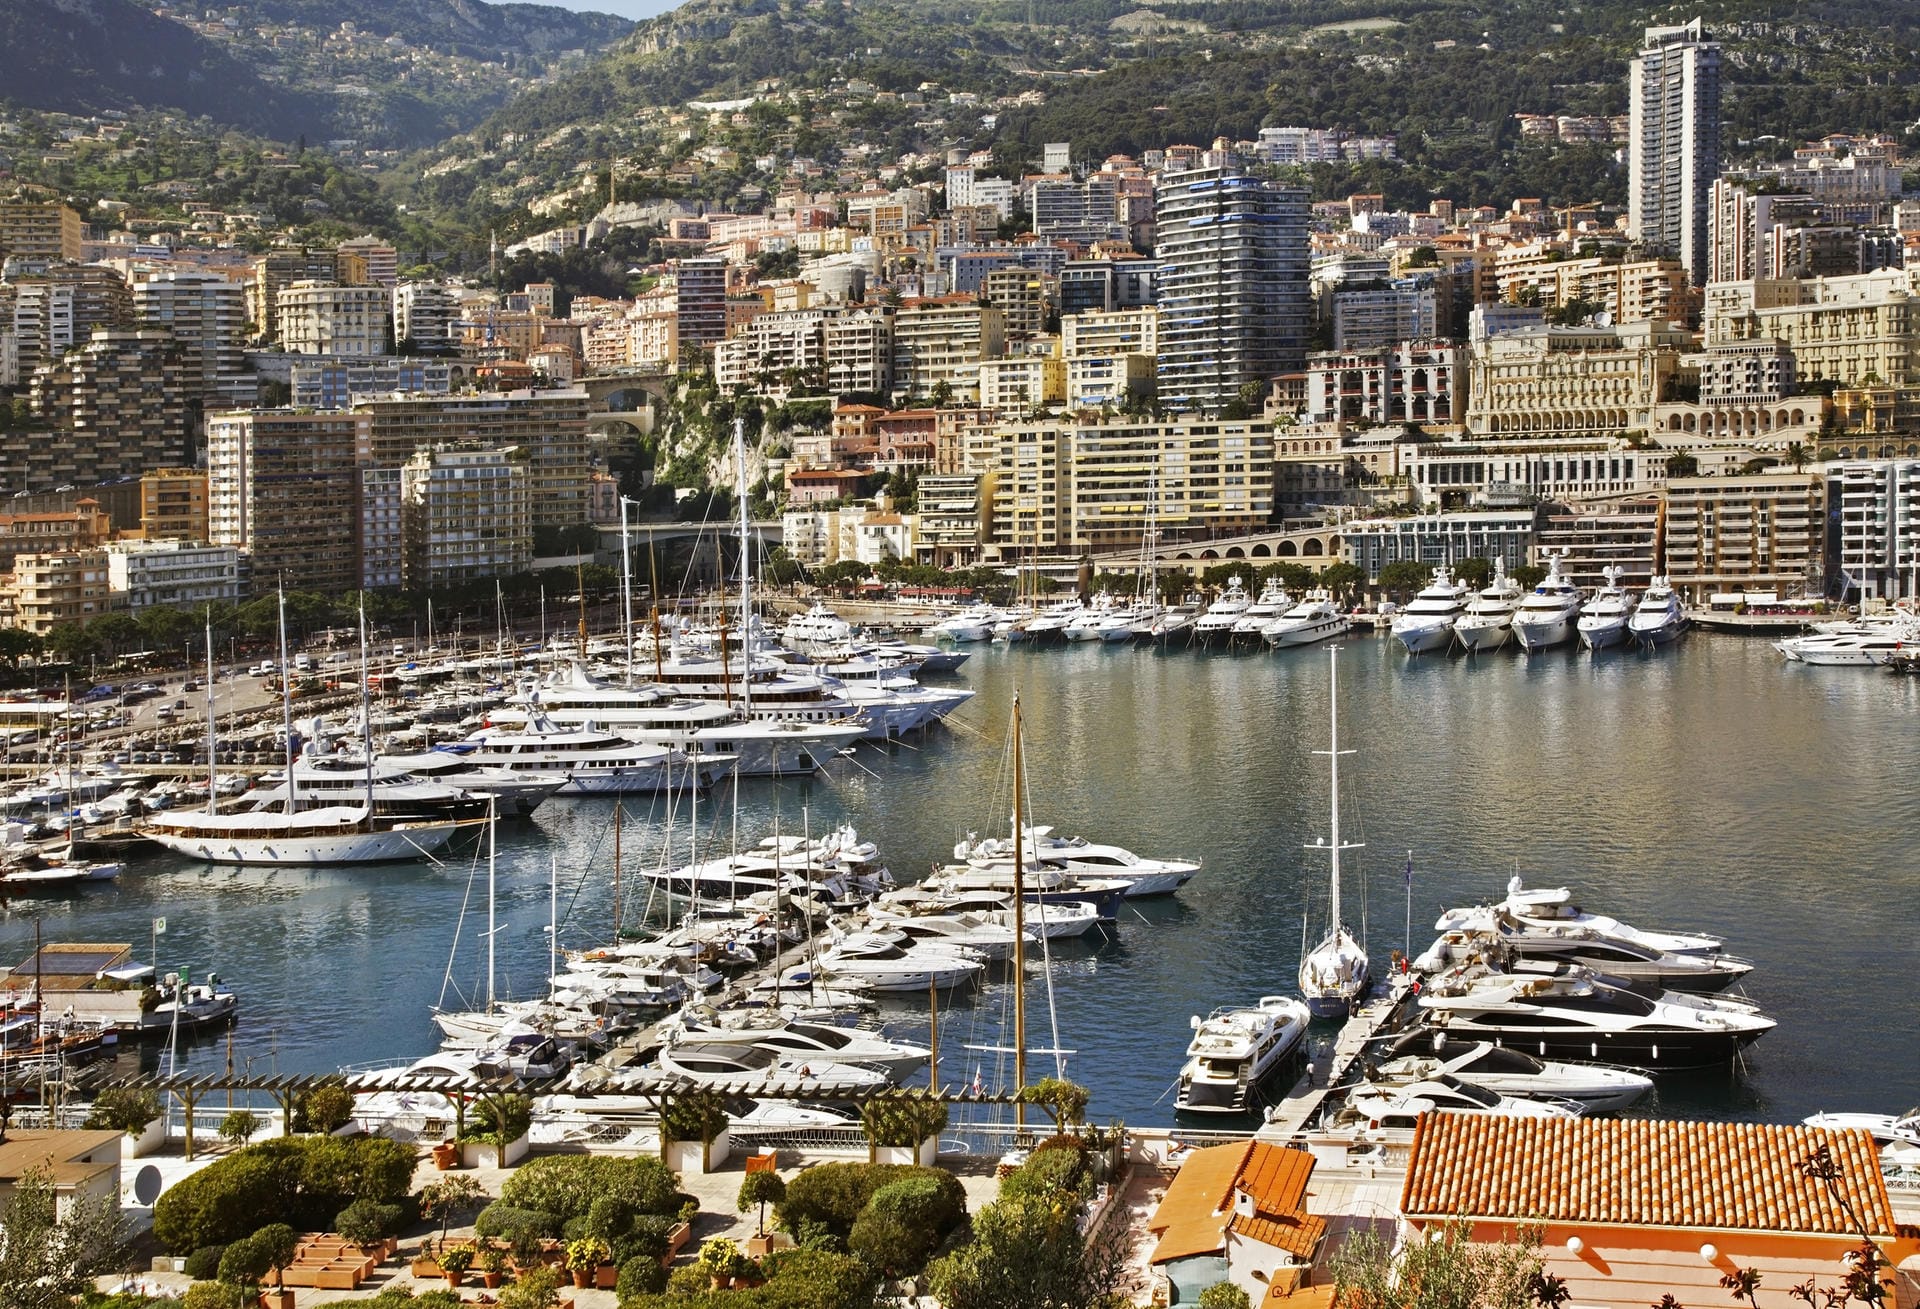 In der Marina Port Hercule in Monaco kostet der Liegeplatz für eine 60 Meter lange Luxusjacht rund 1200 Euro pro Nacht. Doch bei Formel-1-Rennen zahlt man für ein langes Wochenende auch schon mal bis zu 90.000 Euro.